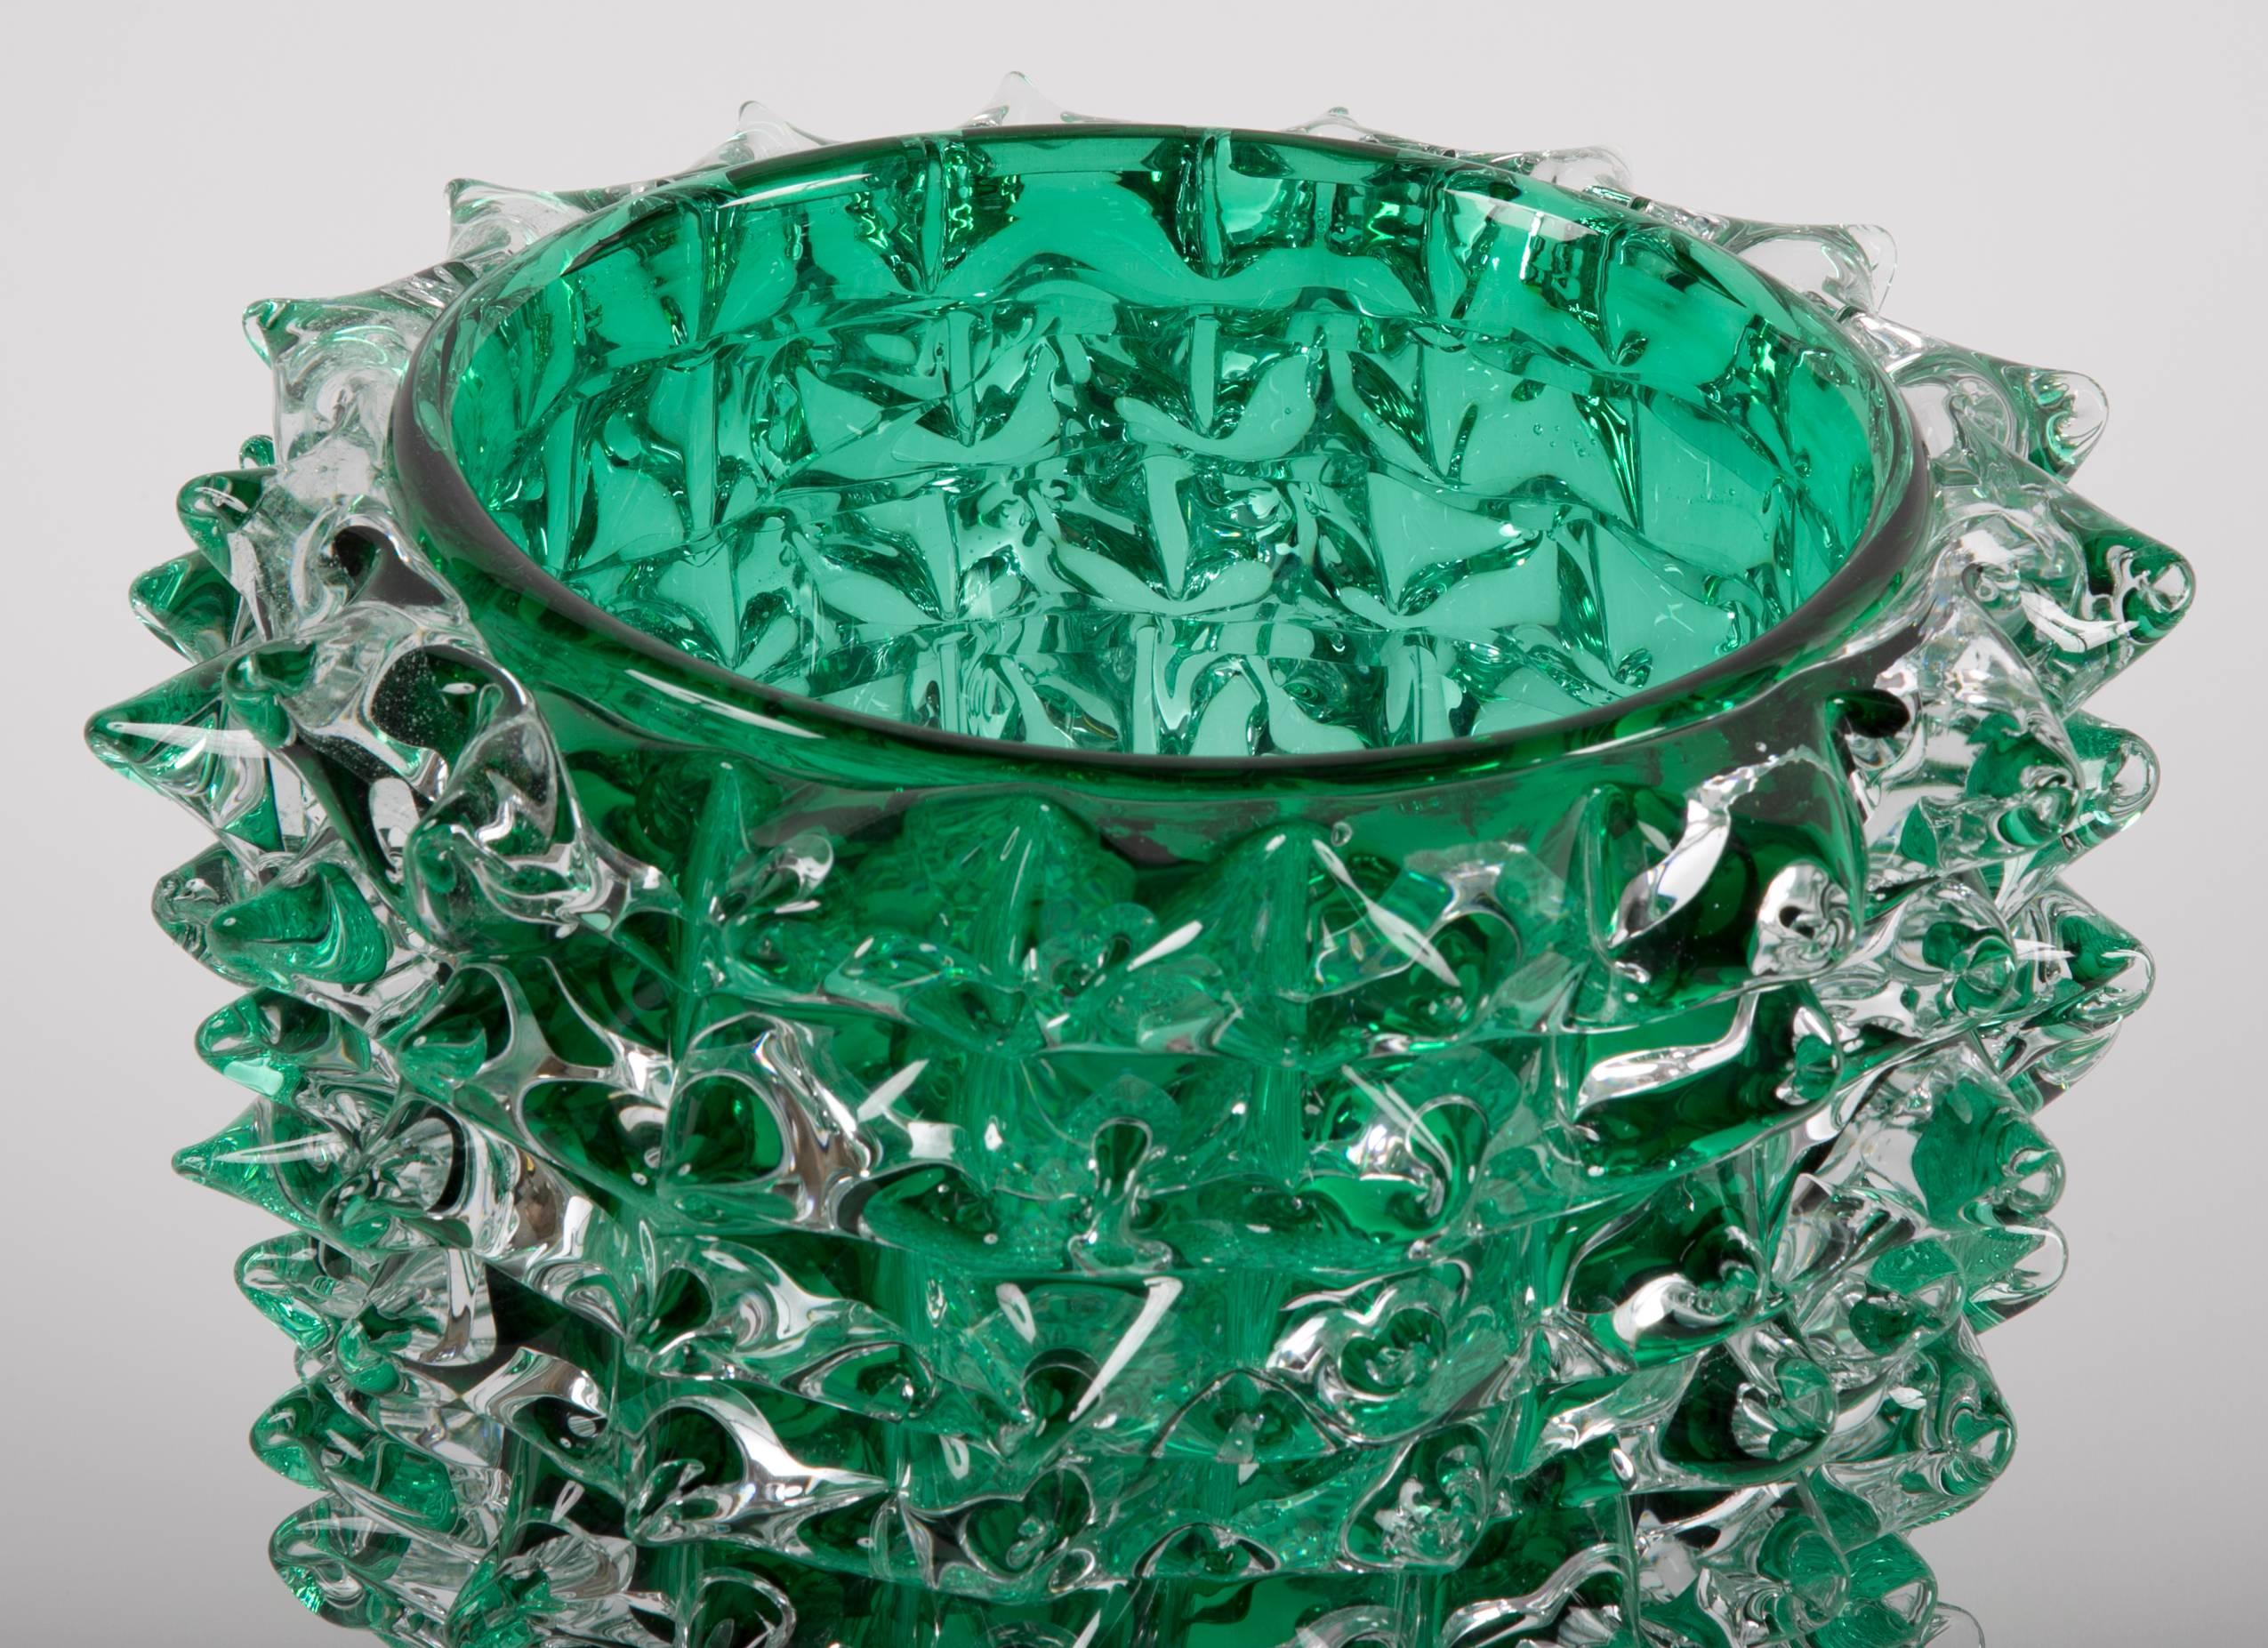 Italian Pair of Murano Green Iridescent Glass Vases Signed Pino Signoretto